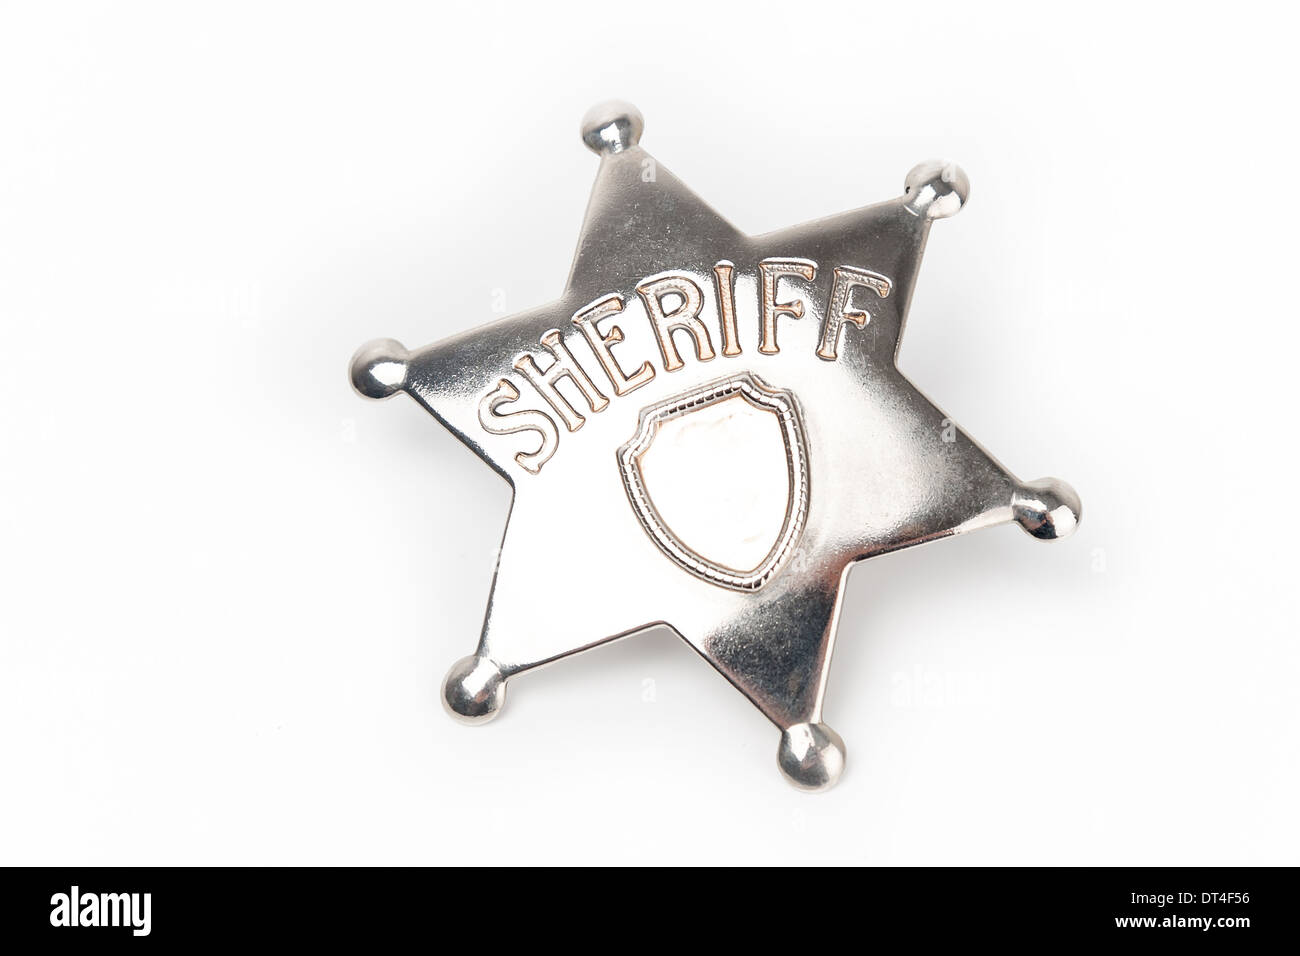 Sheriff's badge isolated on white background Stock Photo